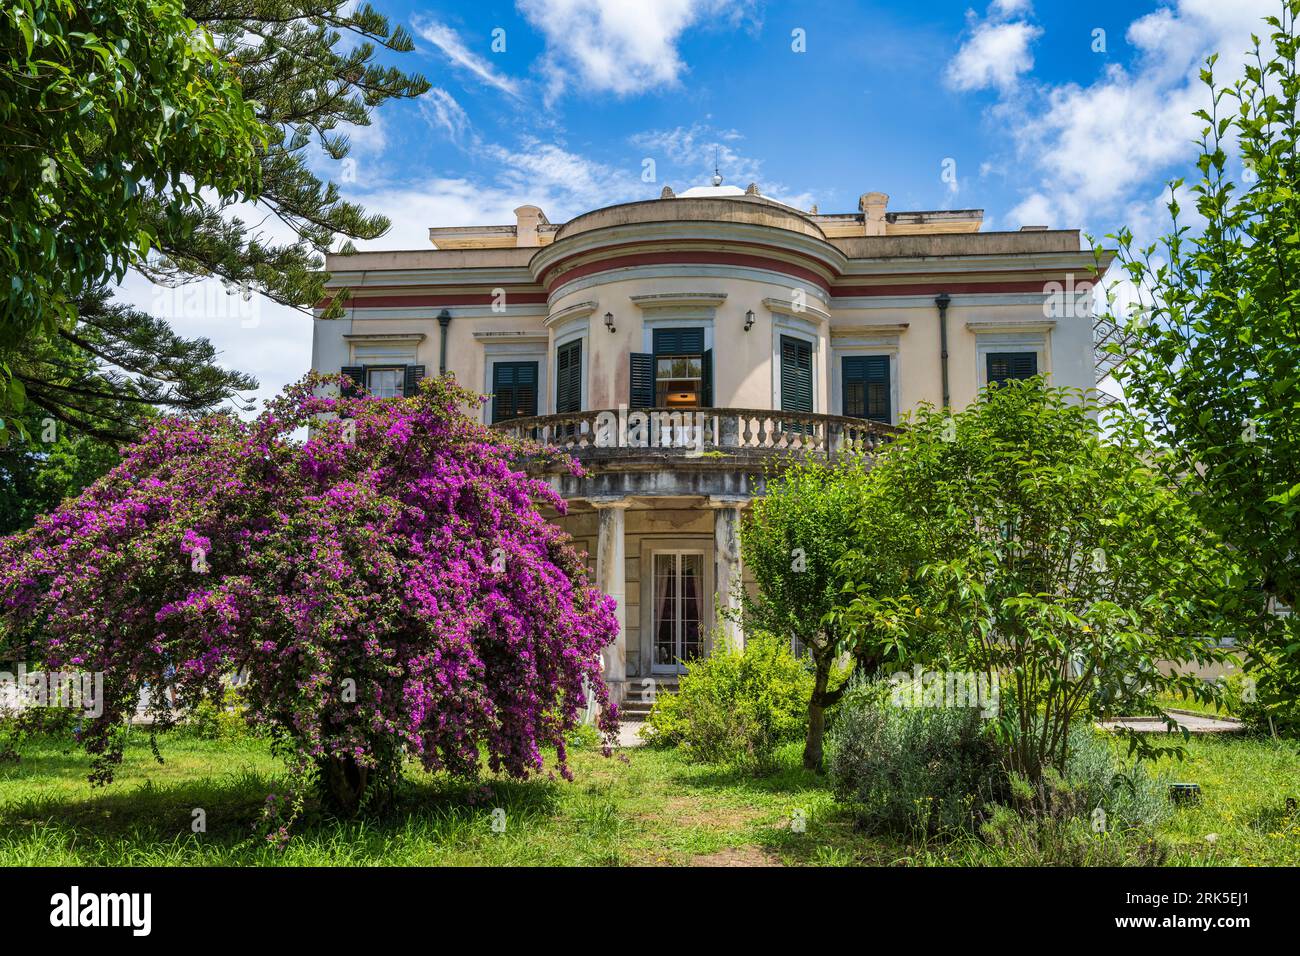 Villa mon repos, résidence d’été originale du Haut-Commissaire britannique, aujourd’hui Musée de Palaiopolis – Île de Corfou, Îles Ioniennes, Grèce Banque D'Images